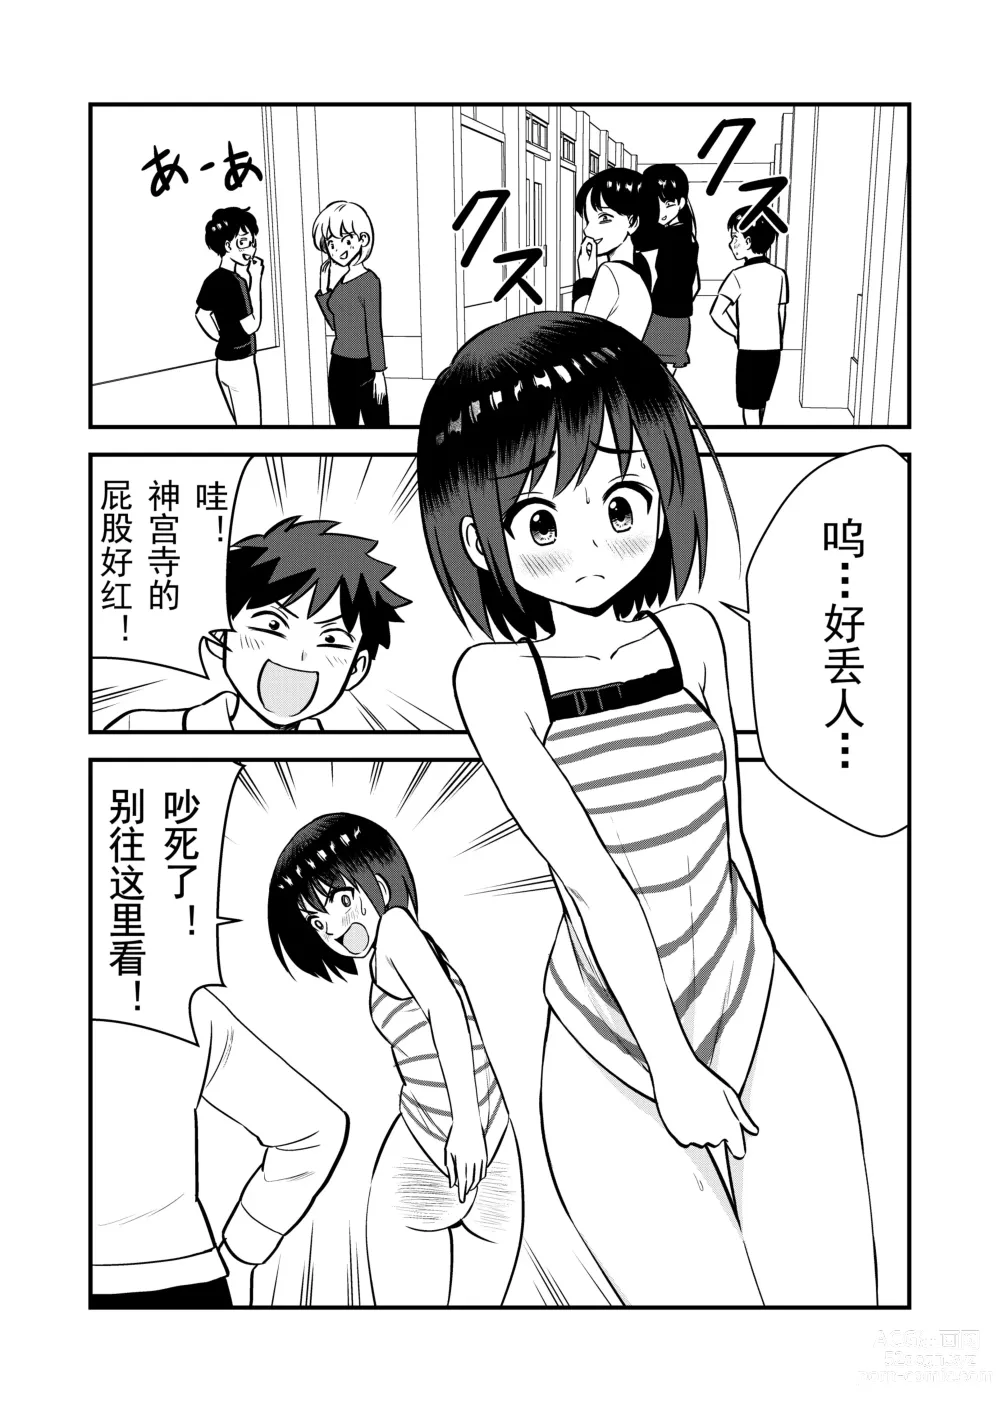 Page 22 of doujinshi 被惩罚后的当天,下半身禁止穿衣服的学校